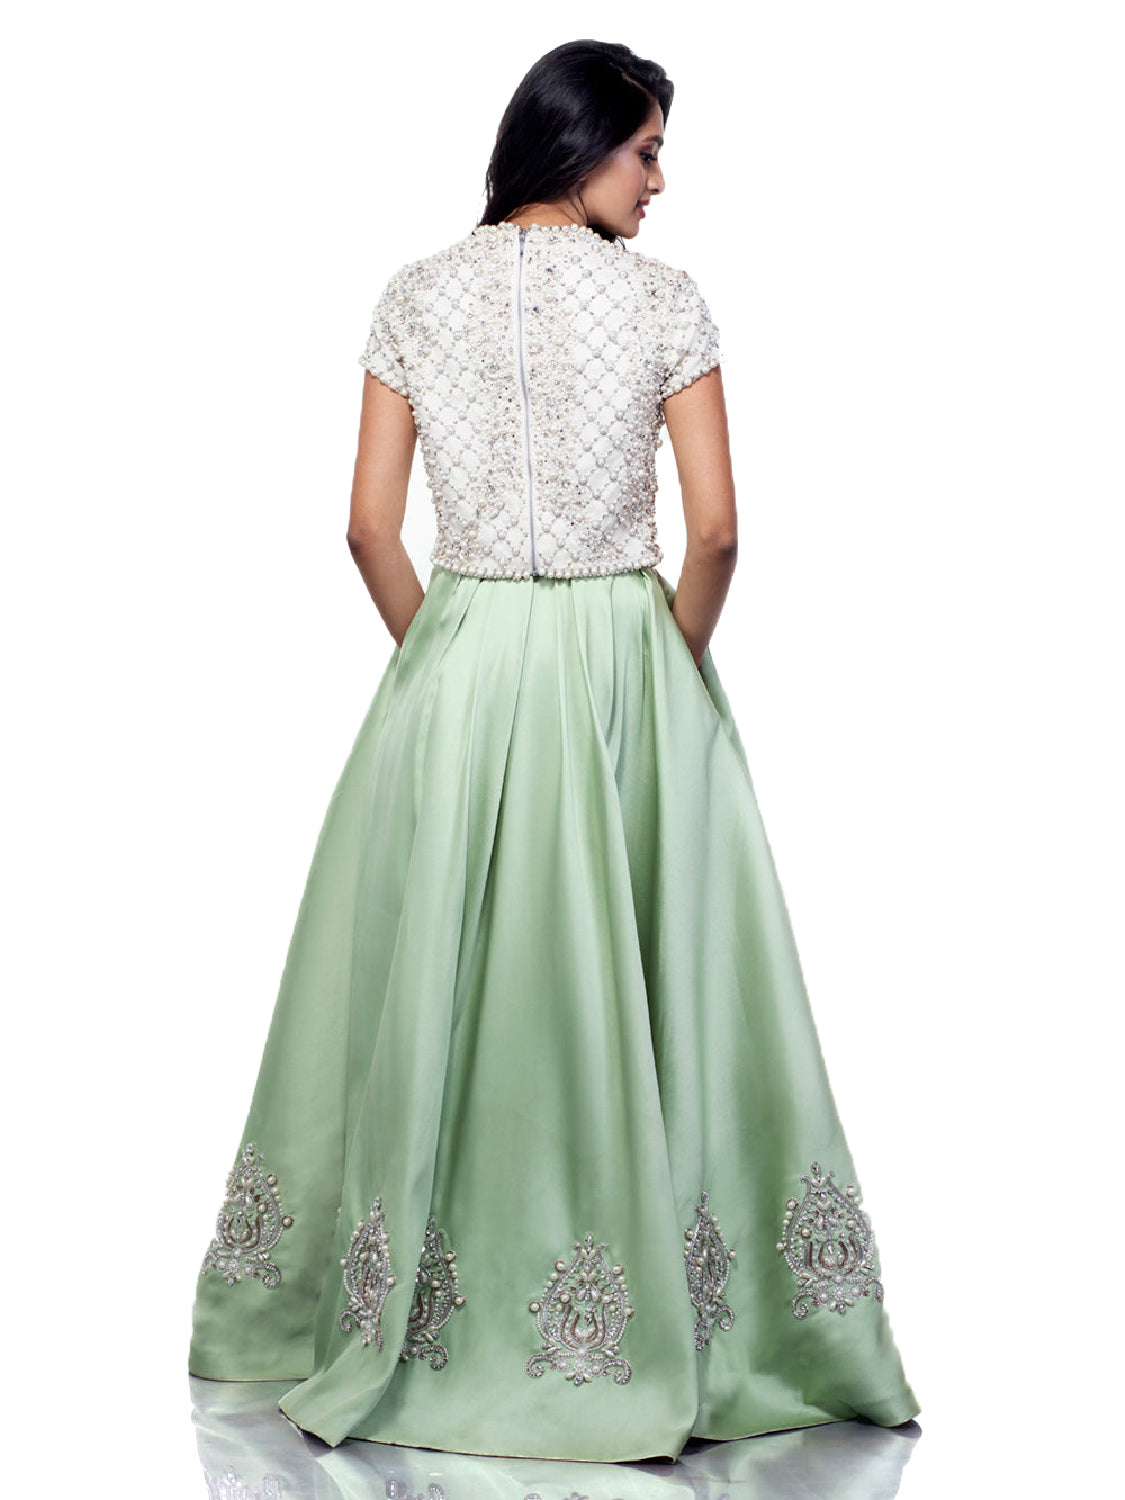 Margarite Crop Top and Skirt – Monisha Jaising